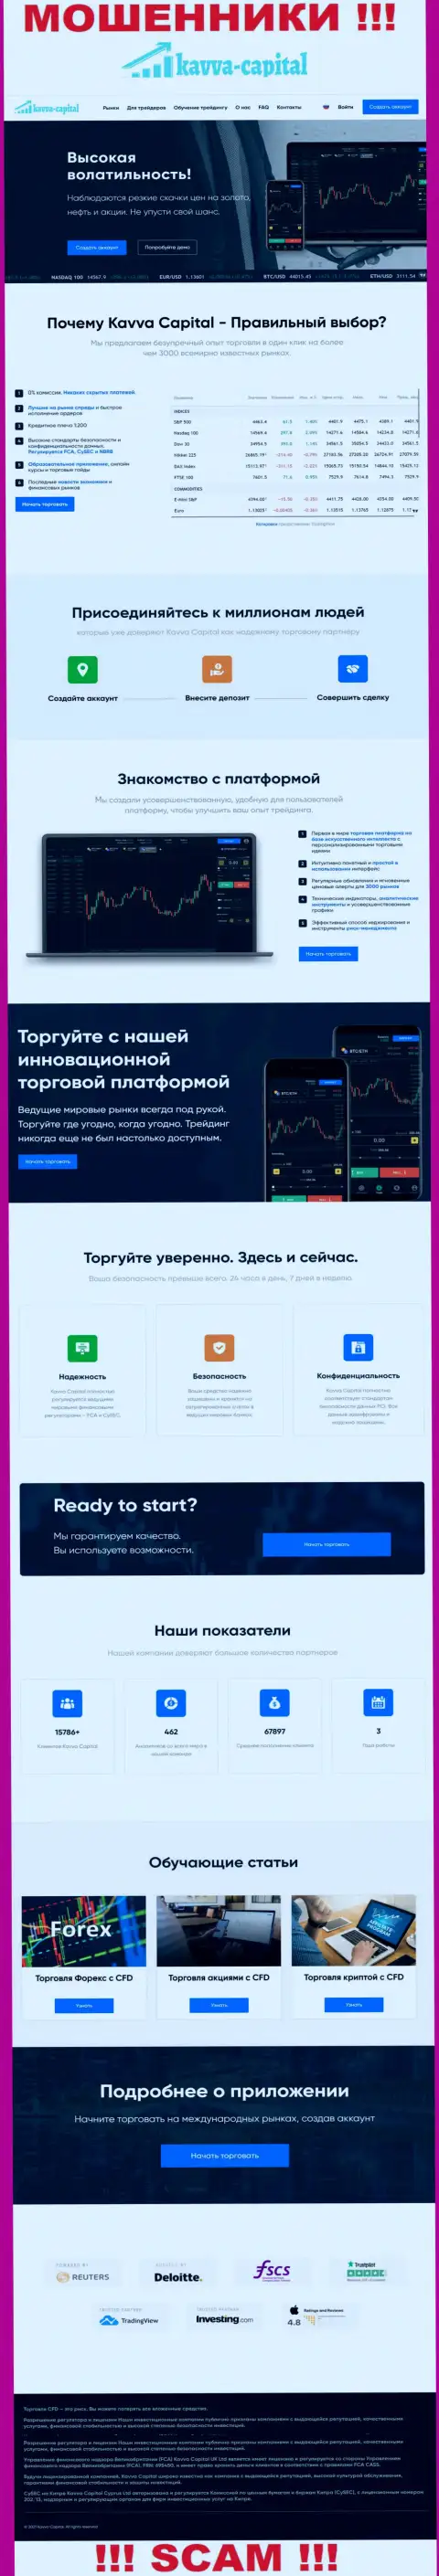 Официальный сайт мошенников Kavva-Capital Com, заполненный материалами для лохов